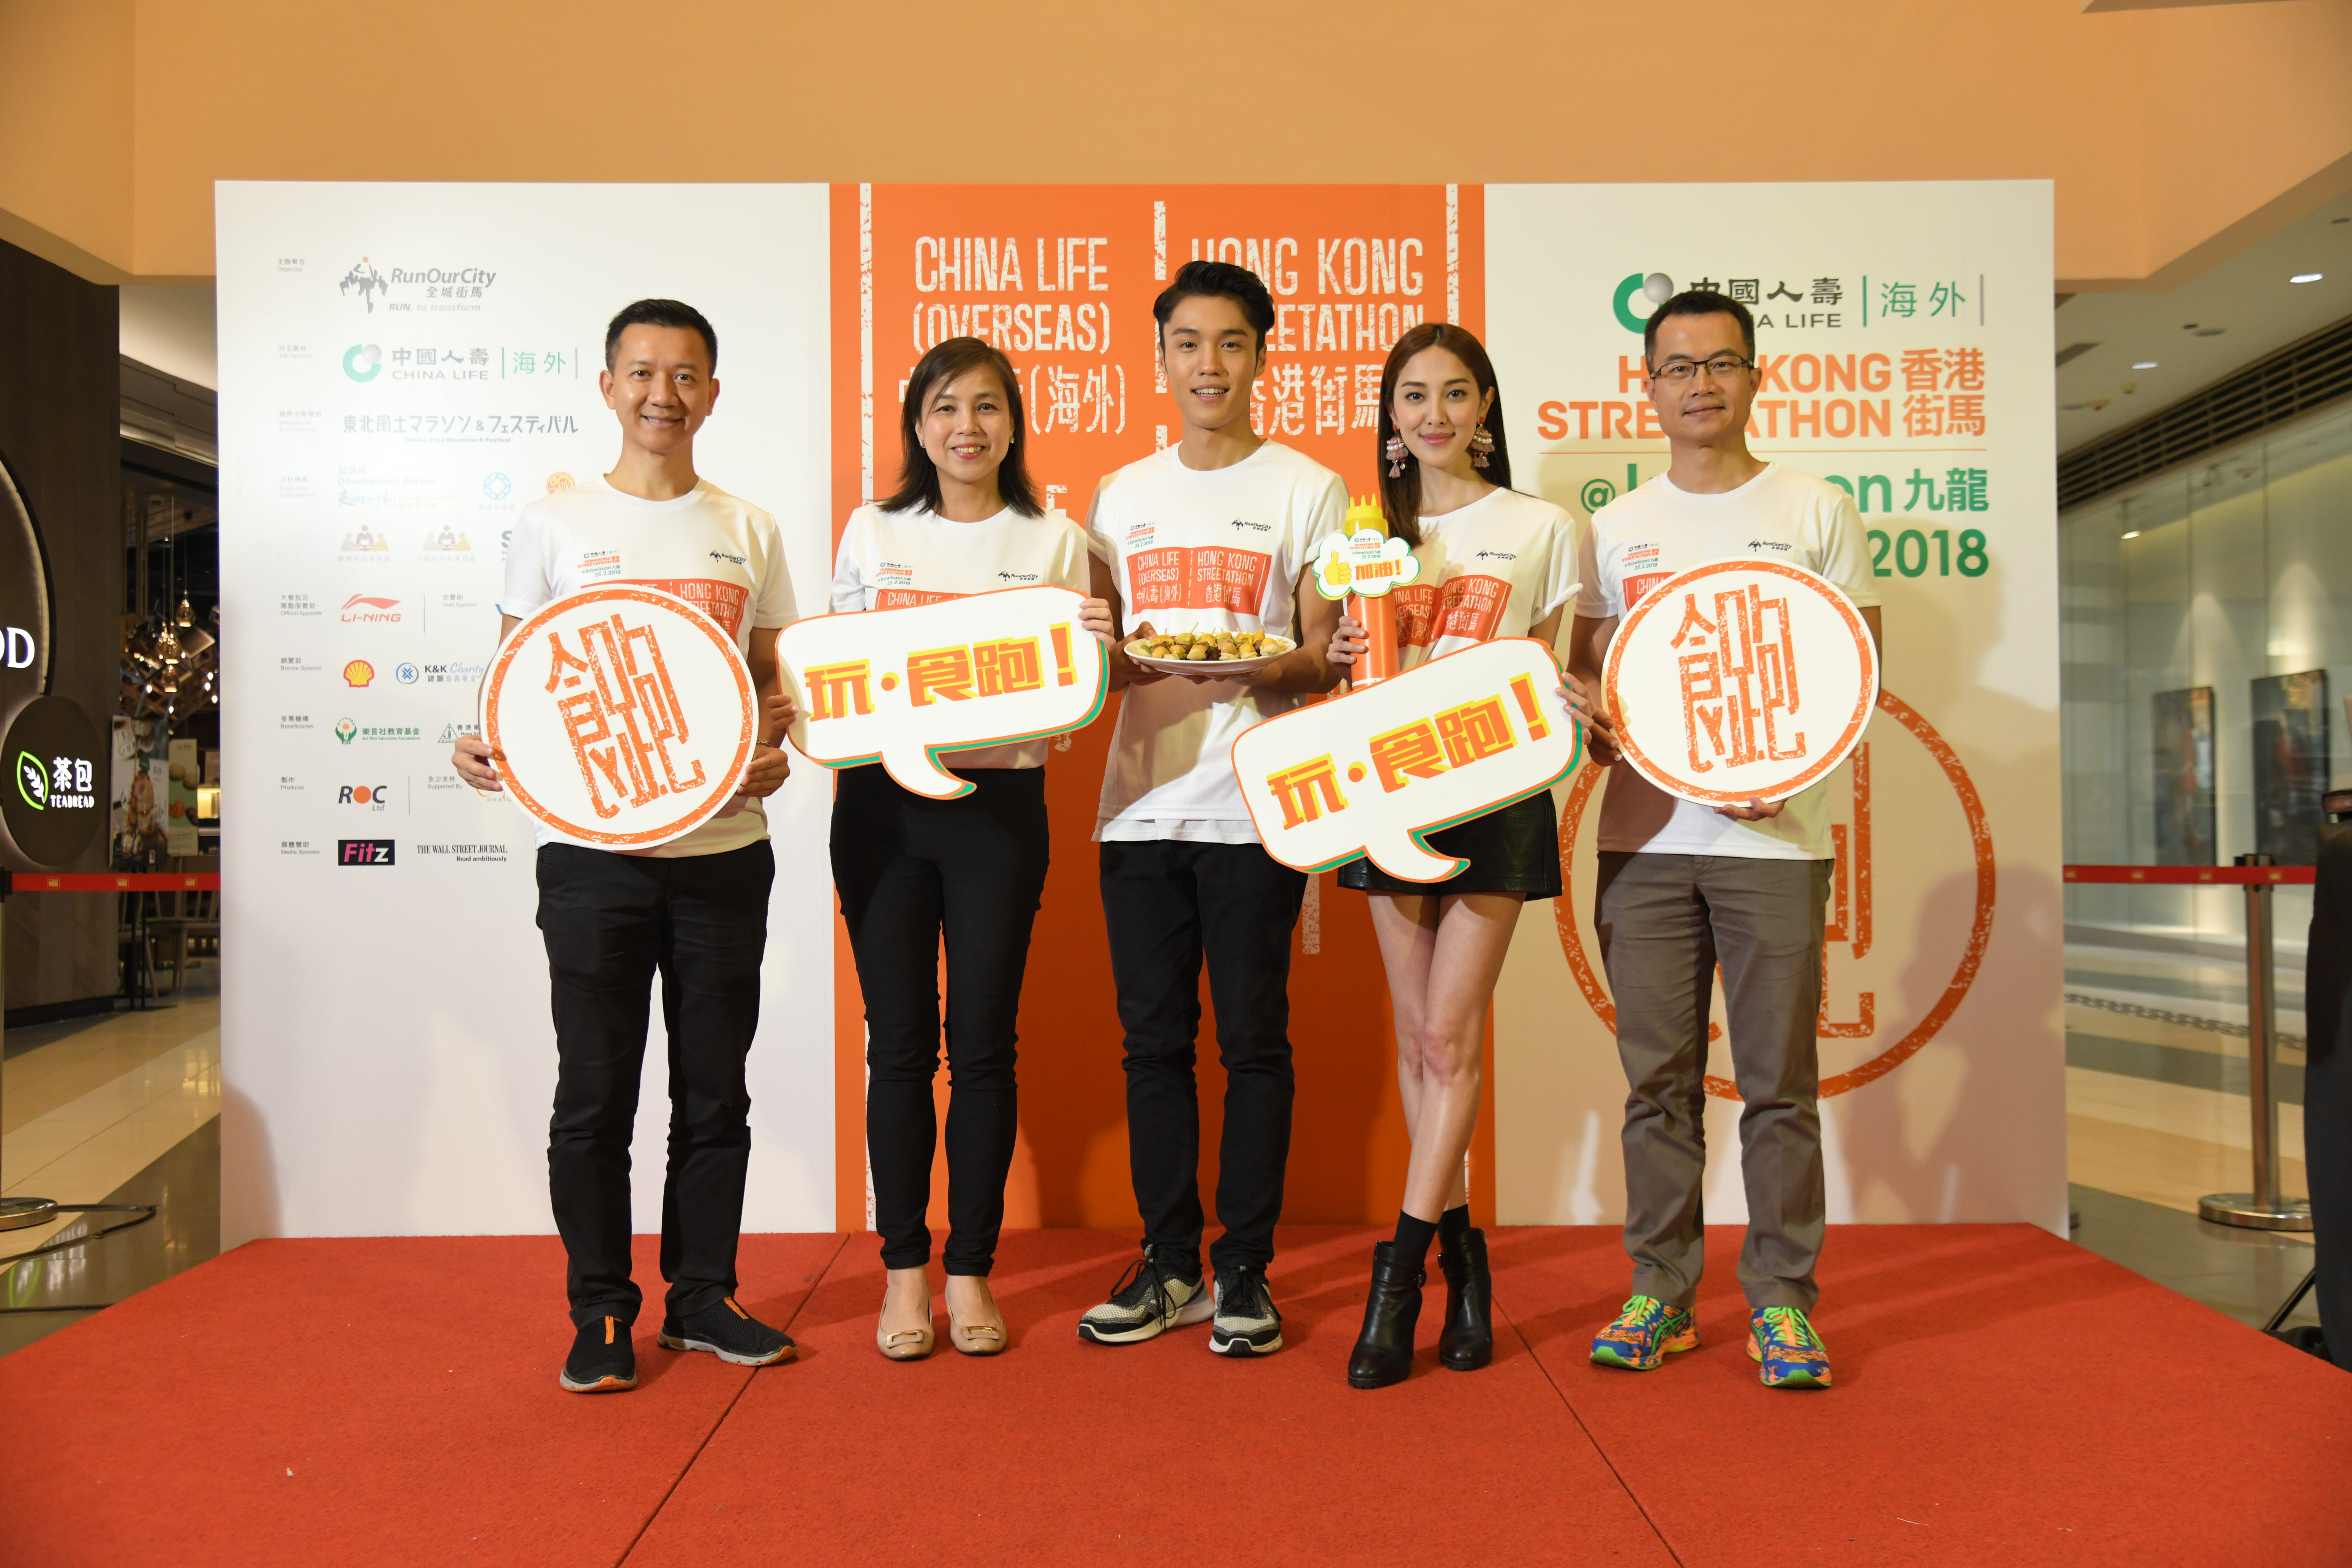 冠名赞助「中国人寿（海外）2018香港街马@九龙」，为慈善机构筹款，嘉年华会与众同乐